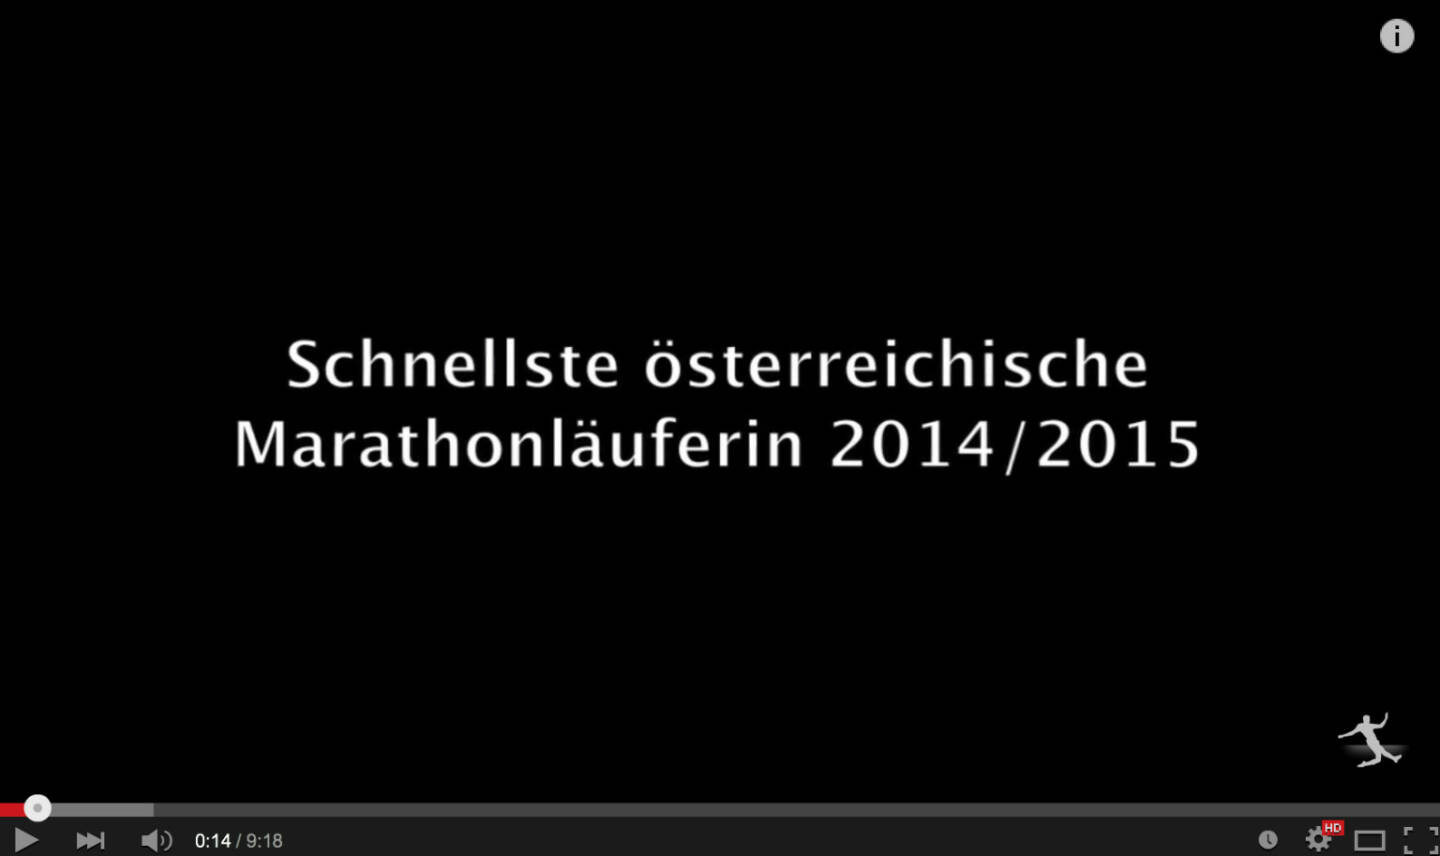 Conny Köpper schnellst österreichischen Marathonläuferin 2014/2015